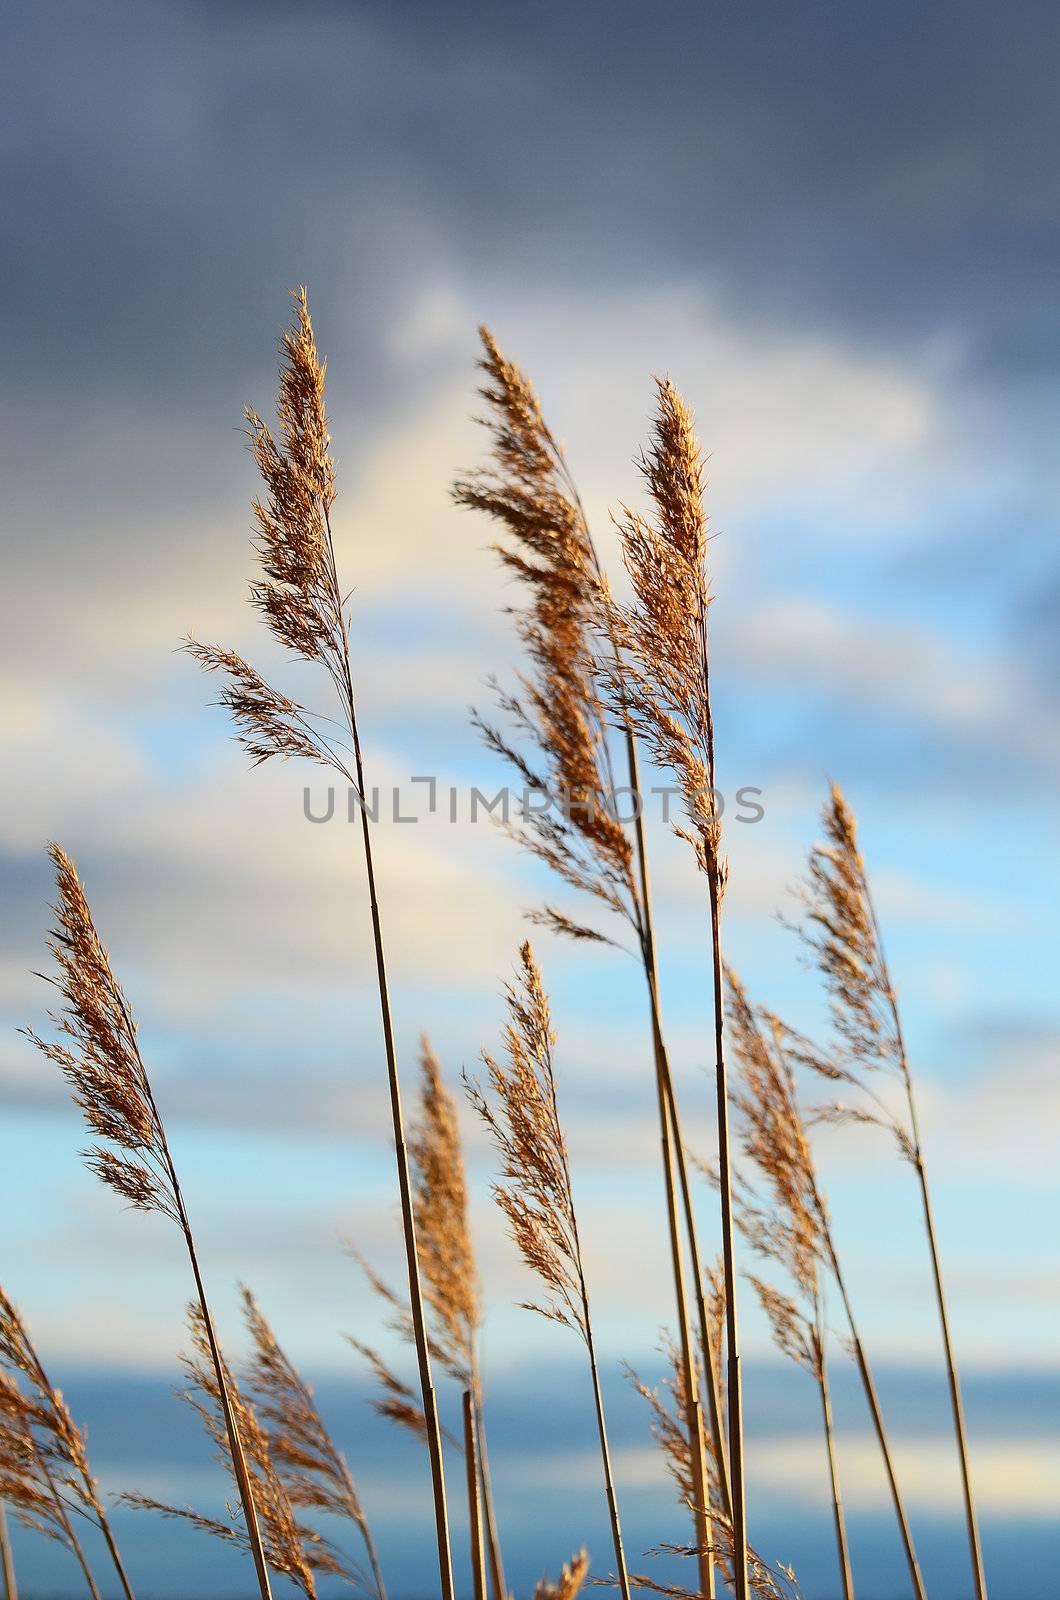 Reeds by ljusnan69